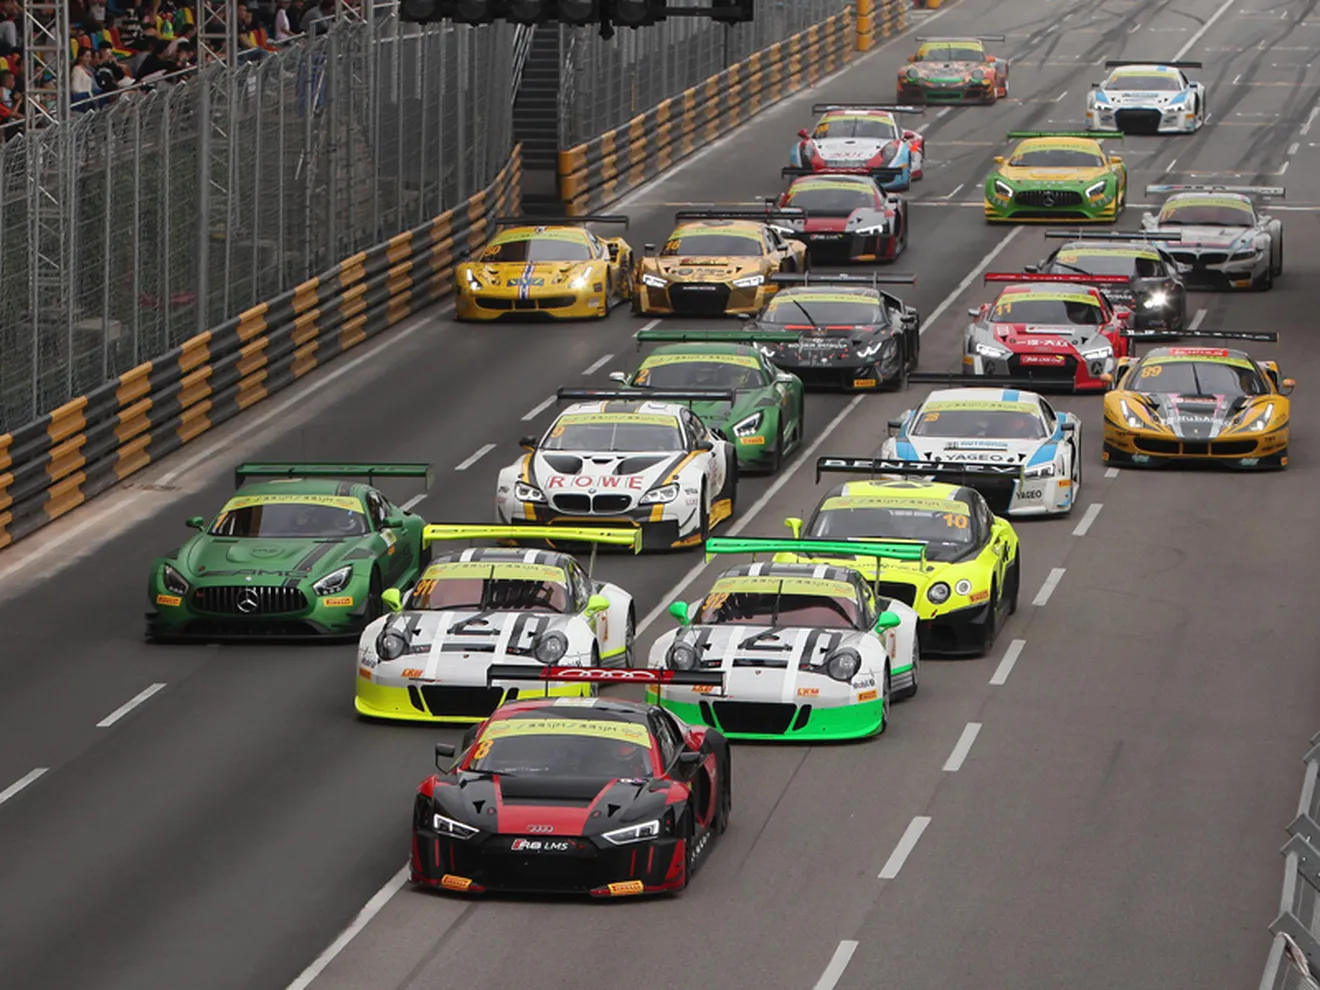 La FIA GT World Cup de Macao es para profesionales